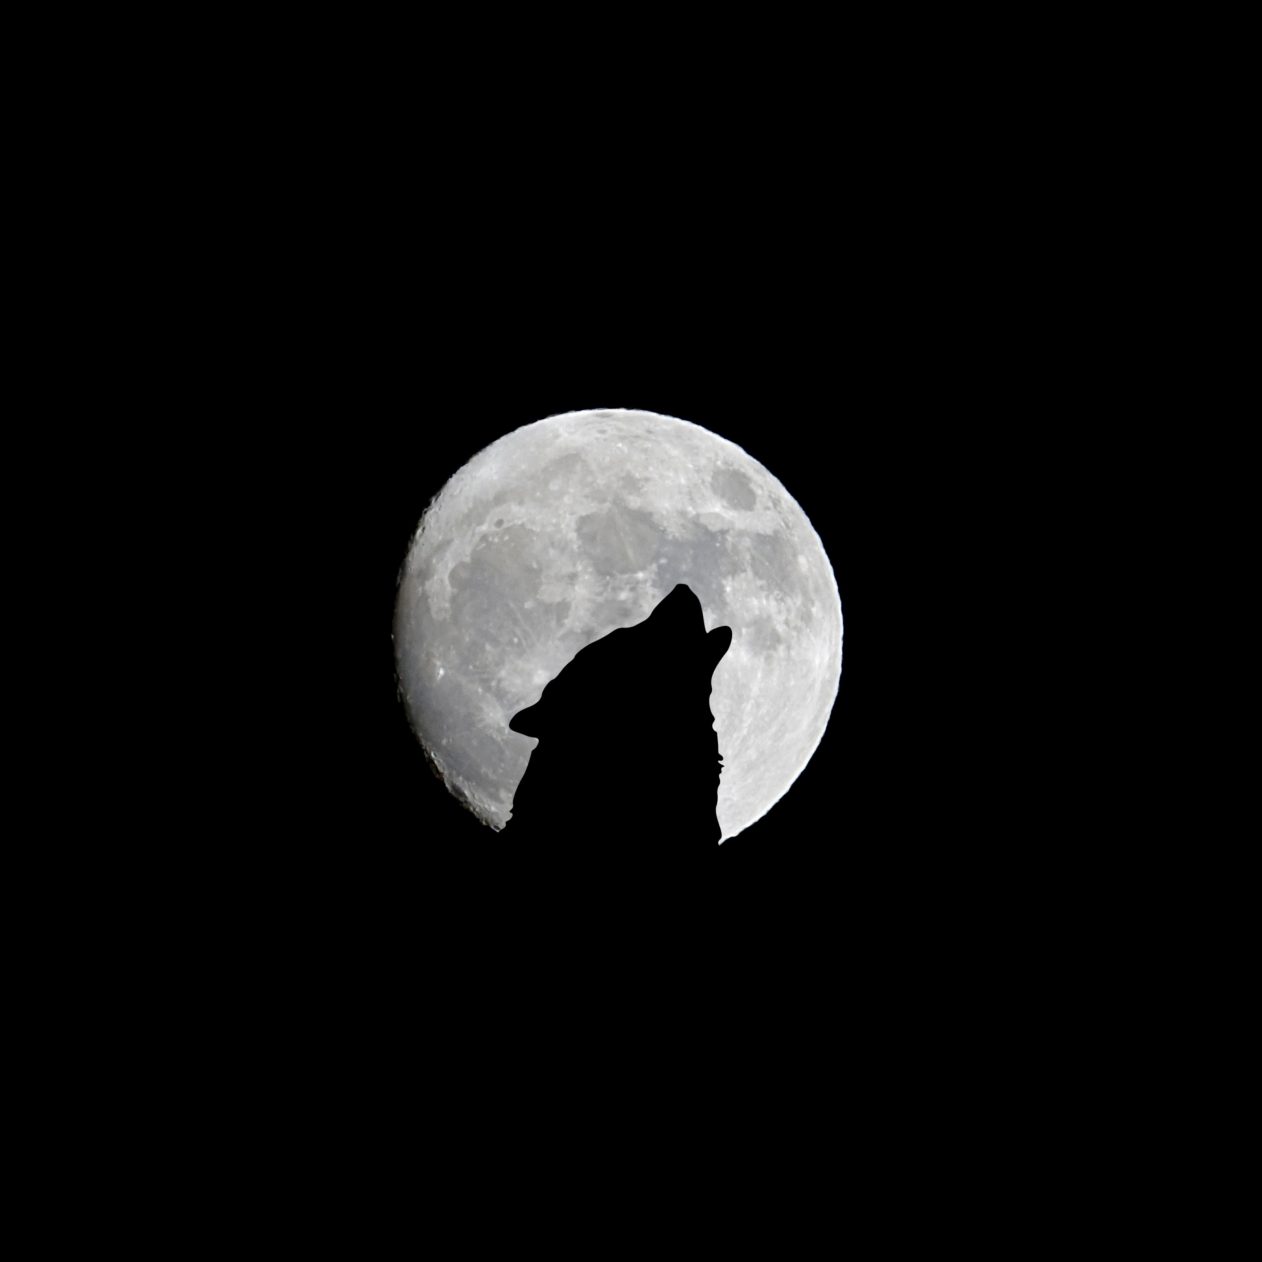 1262x1262 Parallax wallpaper 4k Silhouette of Wolf Full Moon Night Darkness iPad Wallpaper 1262x1262 pixels resolution